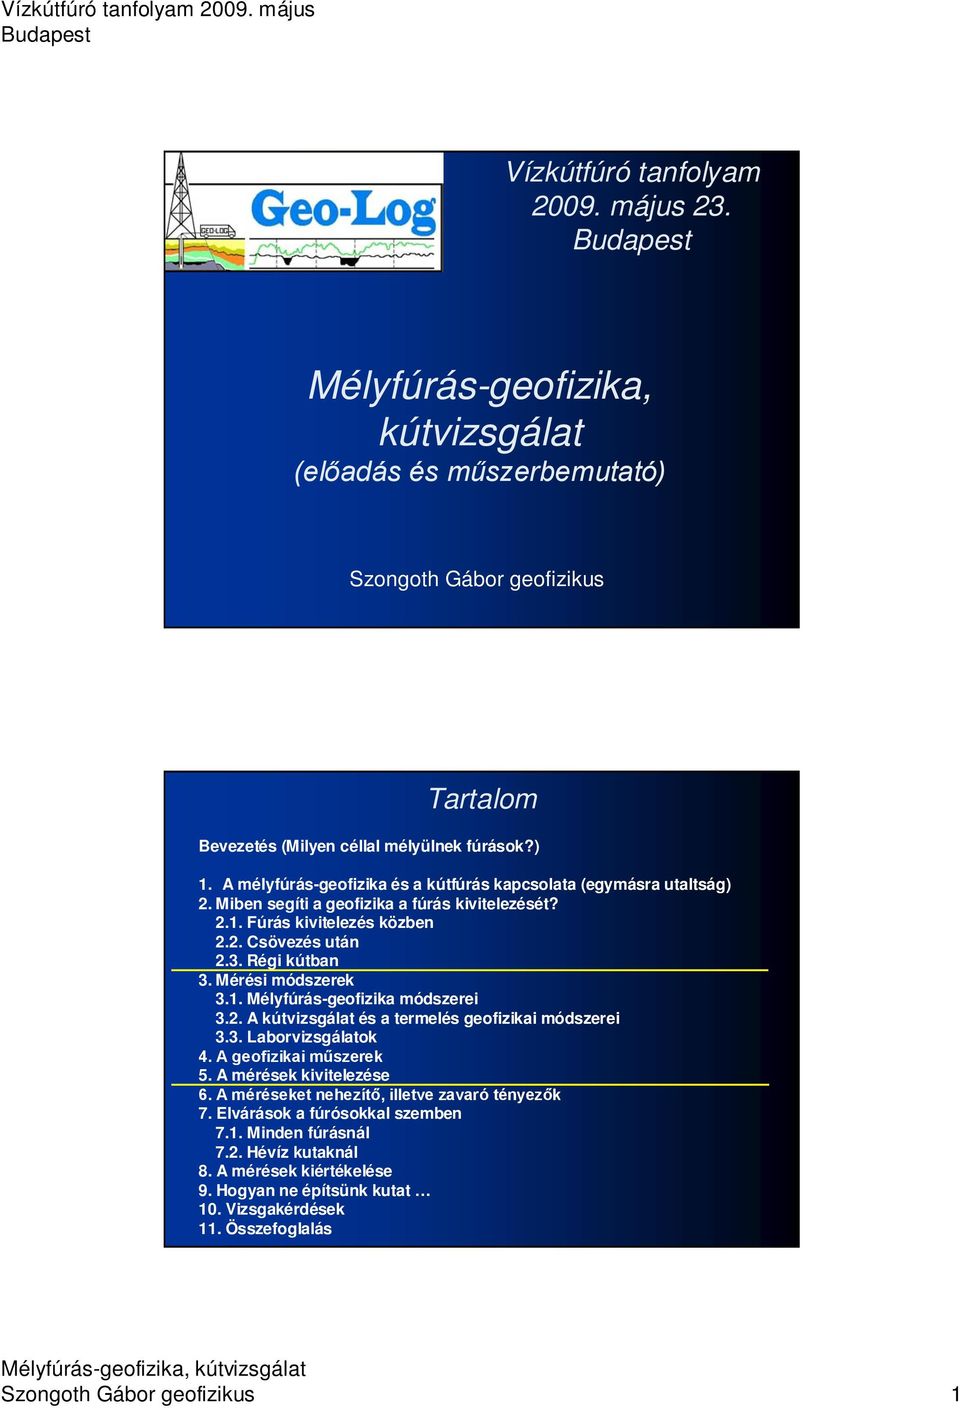 Mélyfúrás-geofizika, kútvizsgálat - PDF Ingyenes letöltés